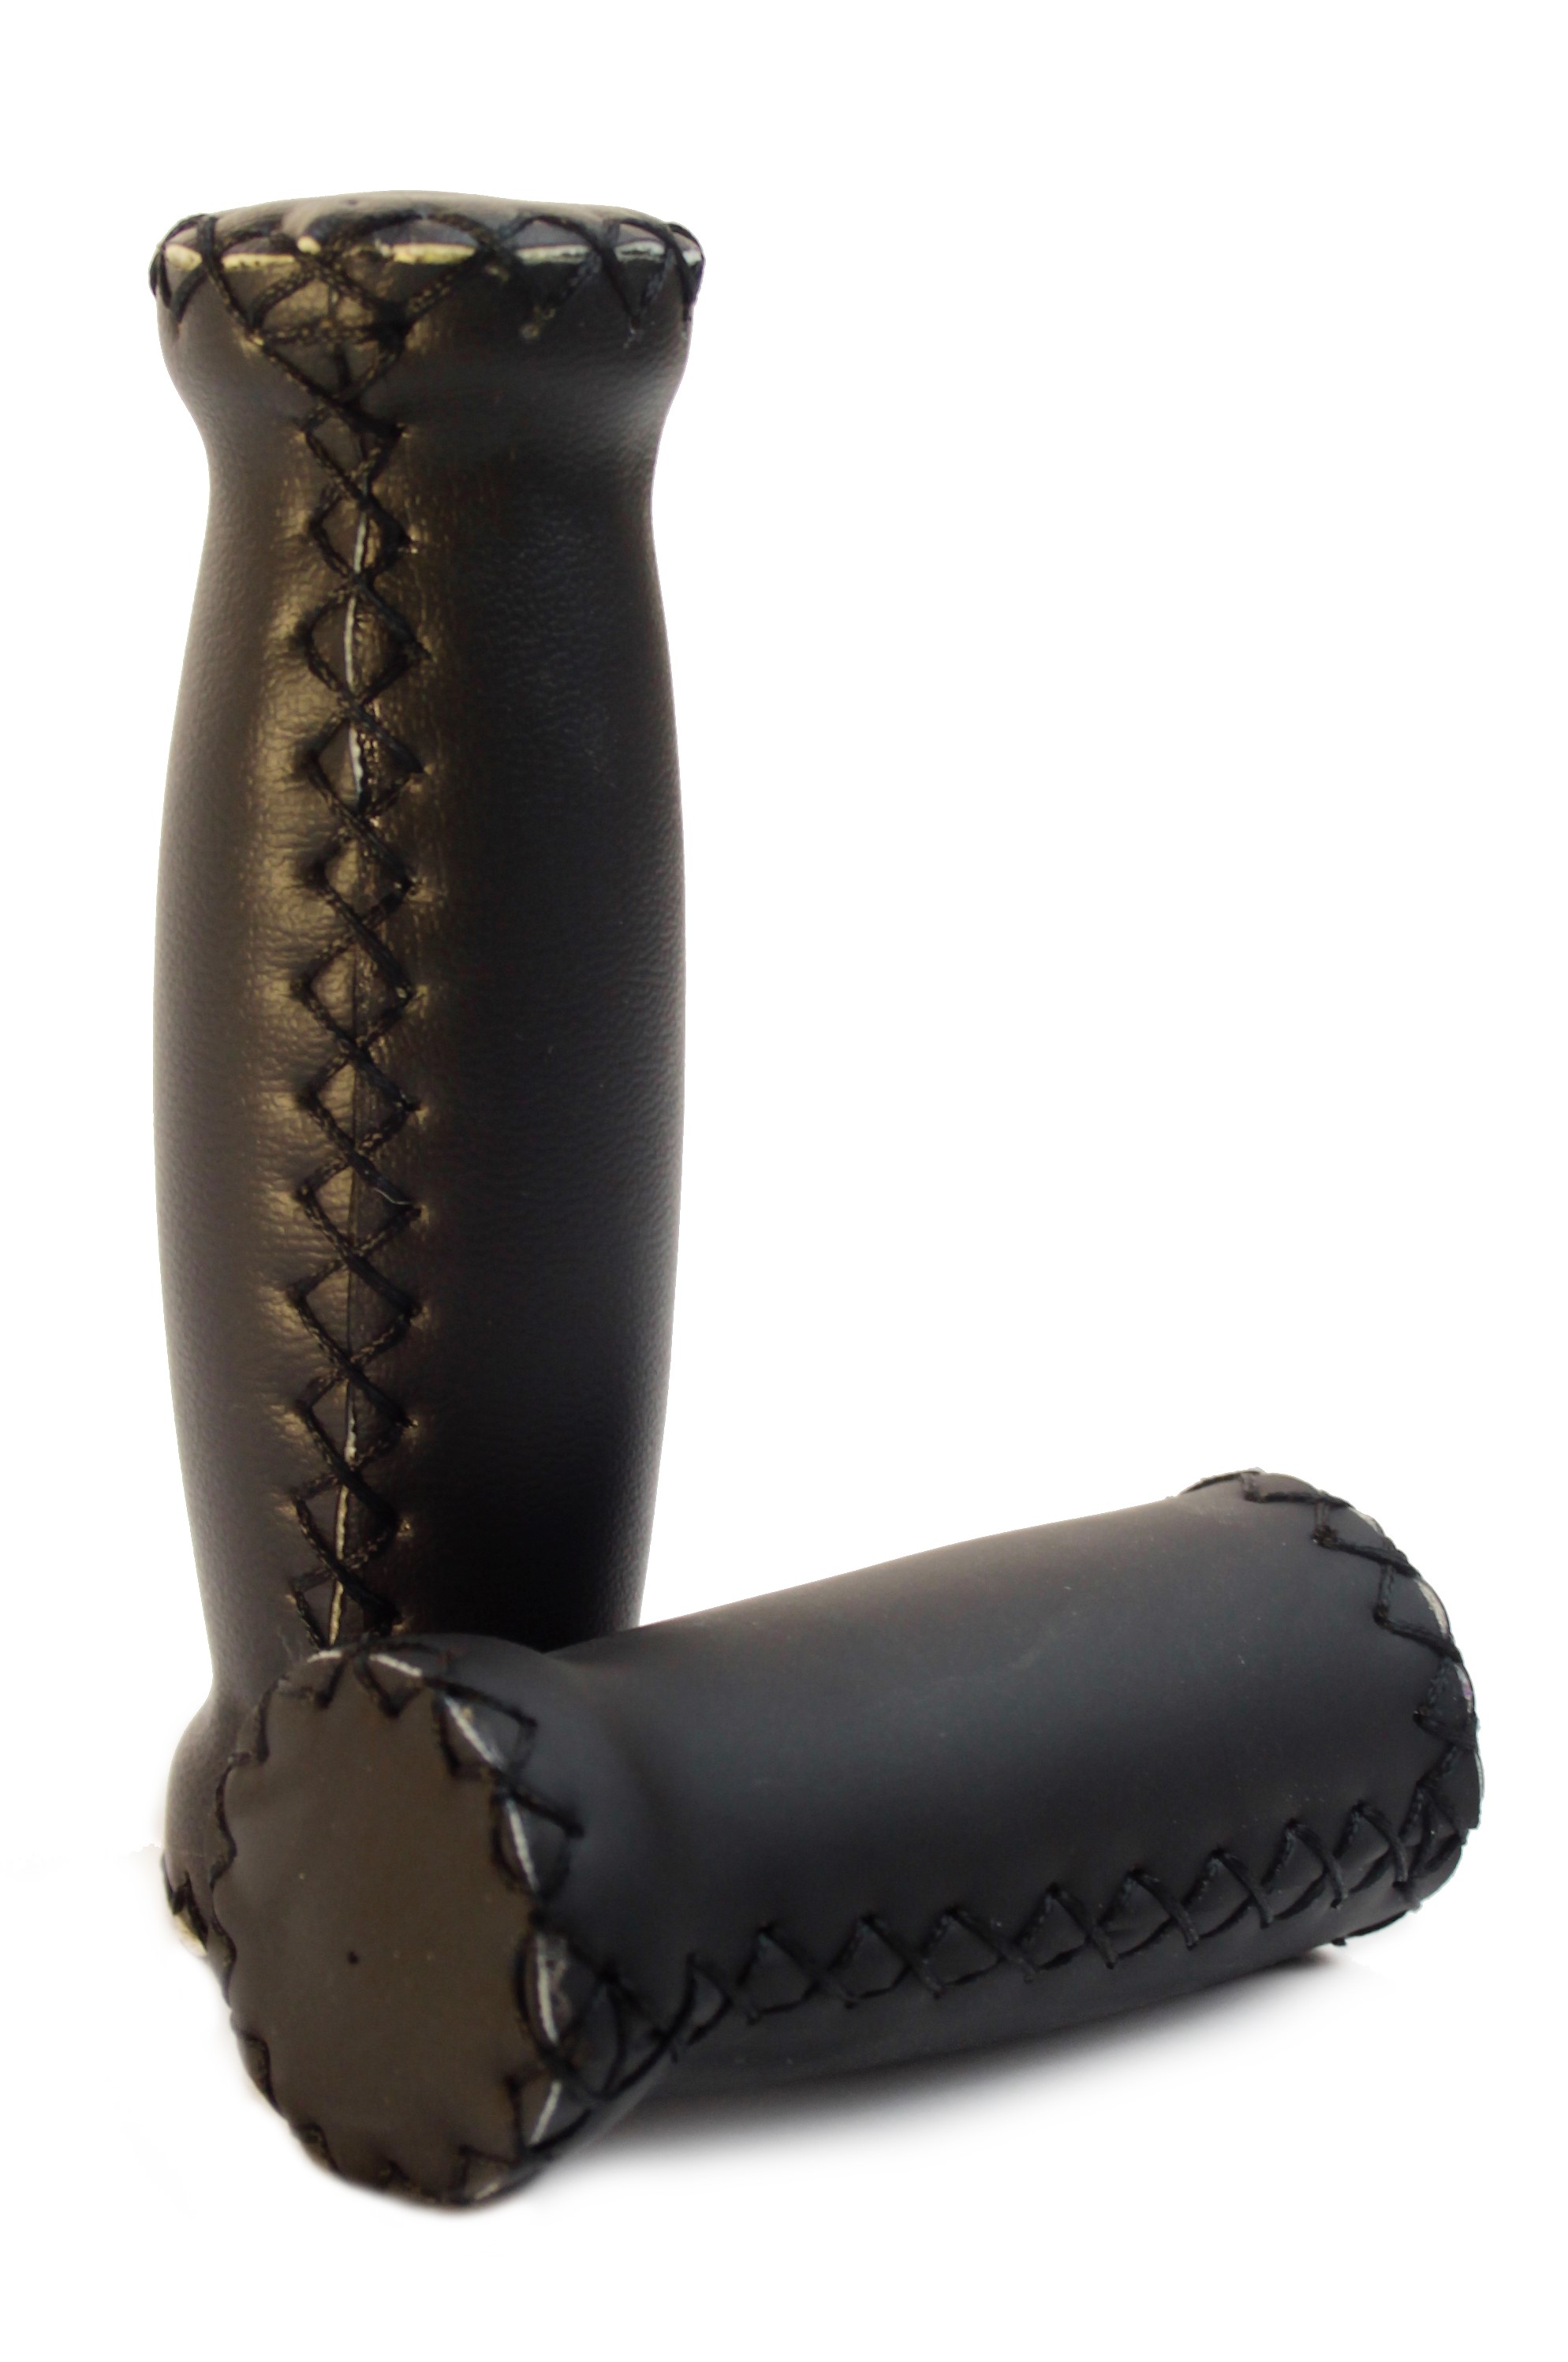 Puños de cuero (cuero artificial) en negro con costuras exteriores, corto y largo